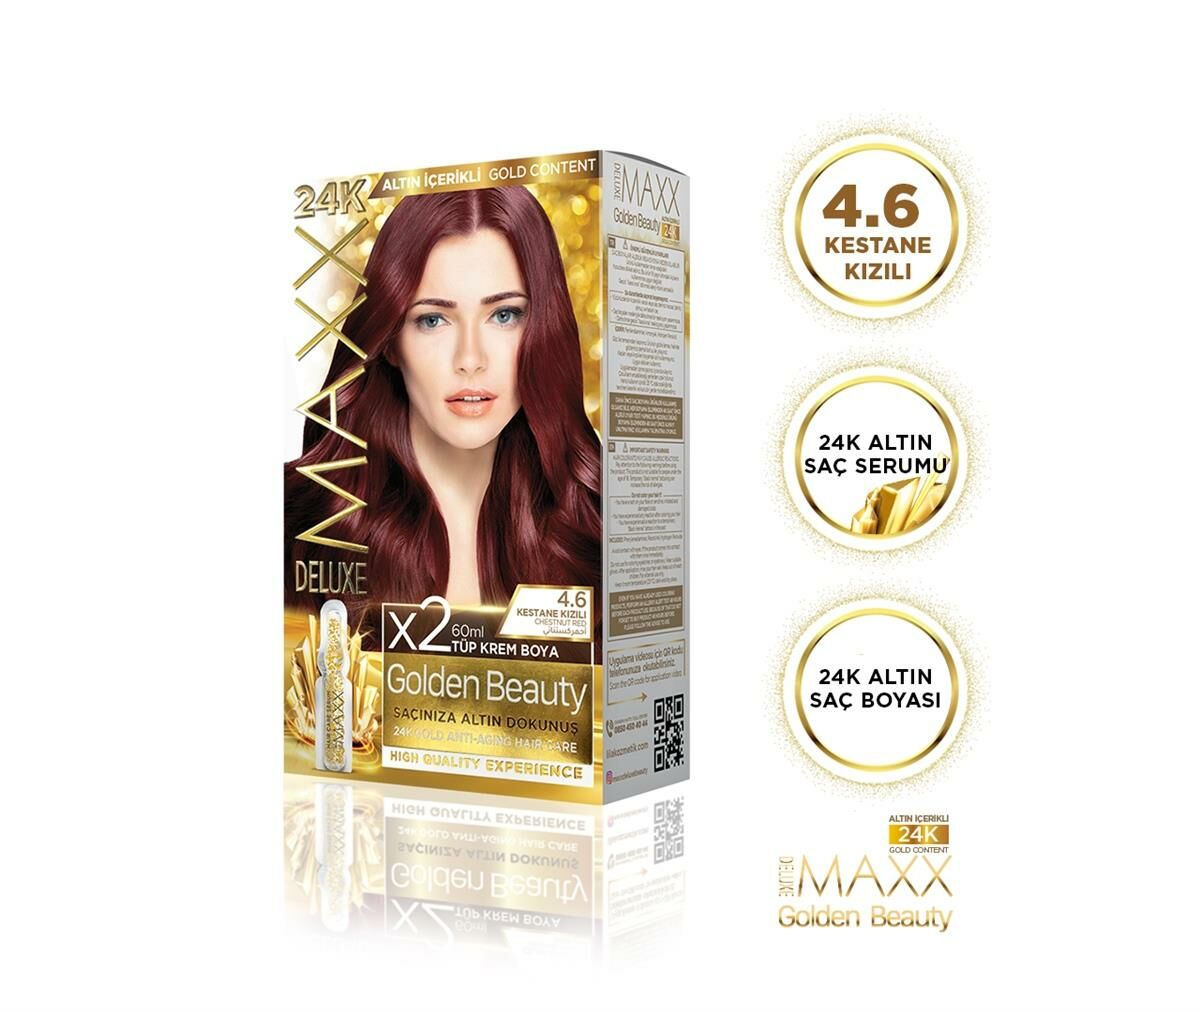 MAXX DELUXE Golden 24K Altın Içerikli Saç Boyası 4.6 Kestane Kızılı 2 Boyama